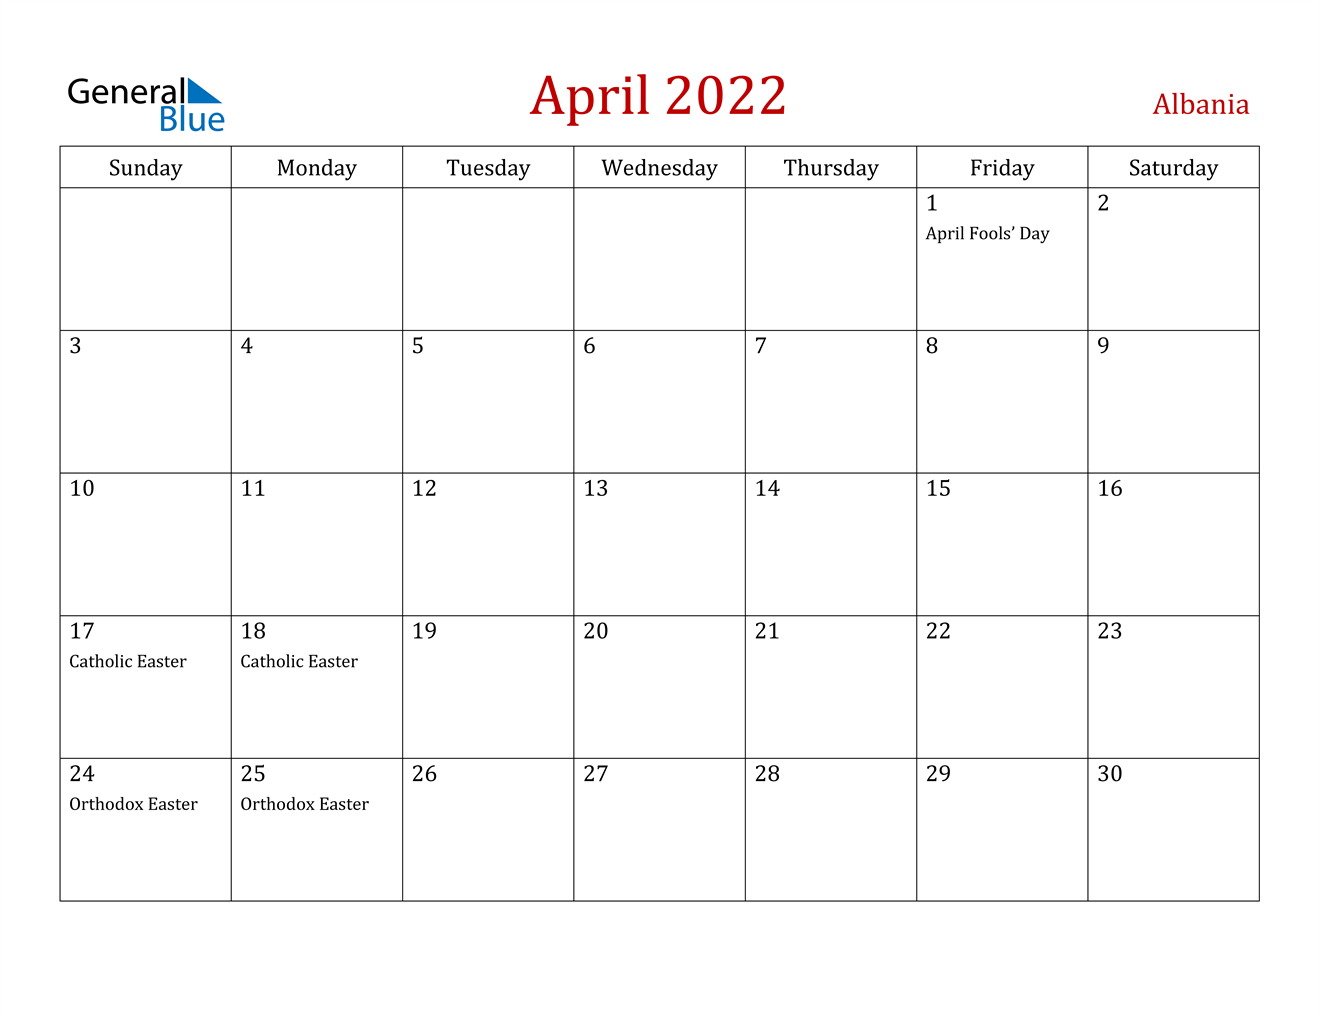 April 2022 Calendar - Albania